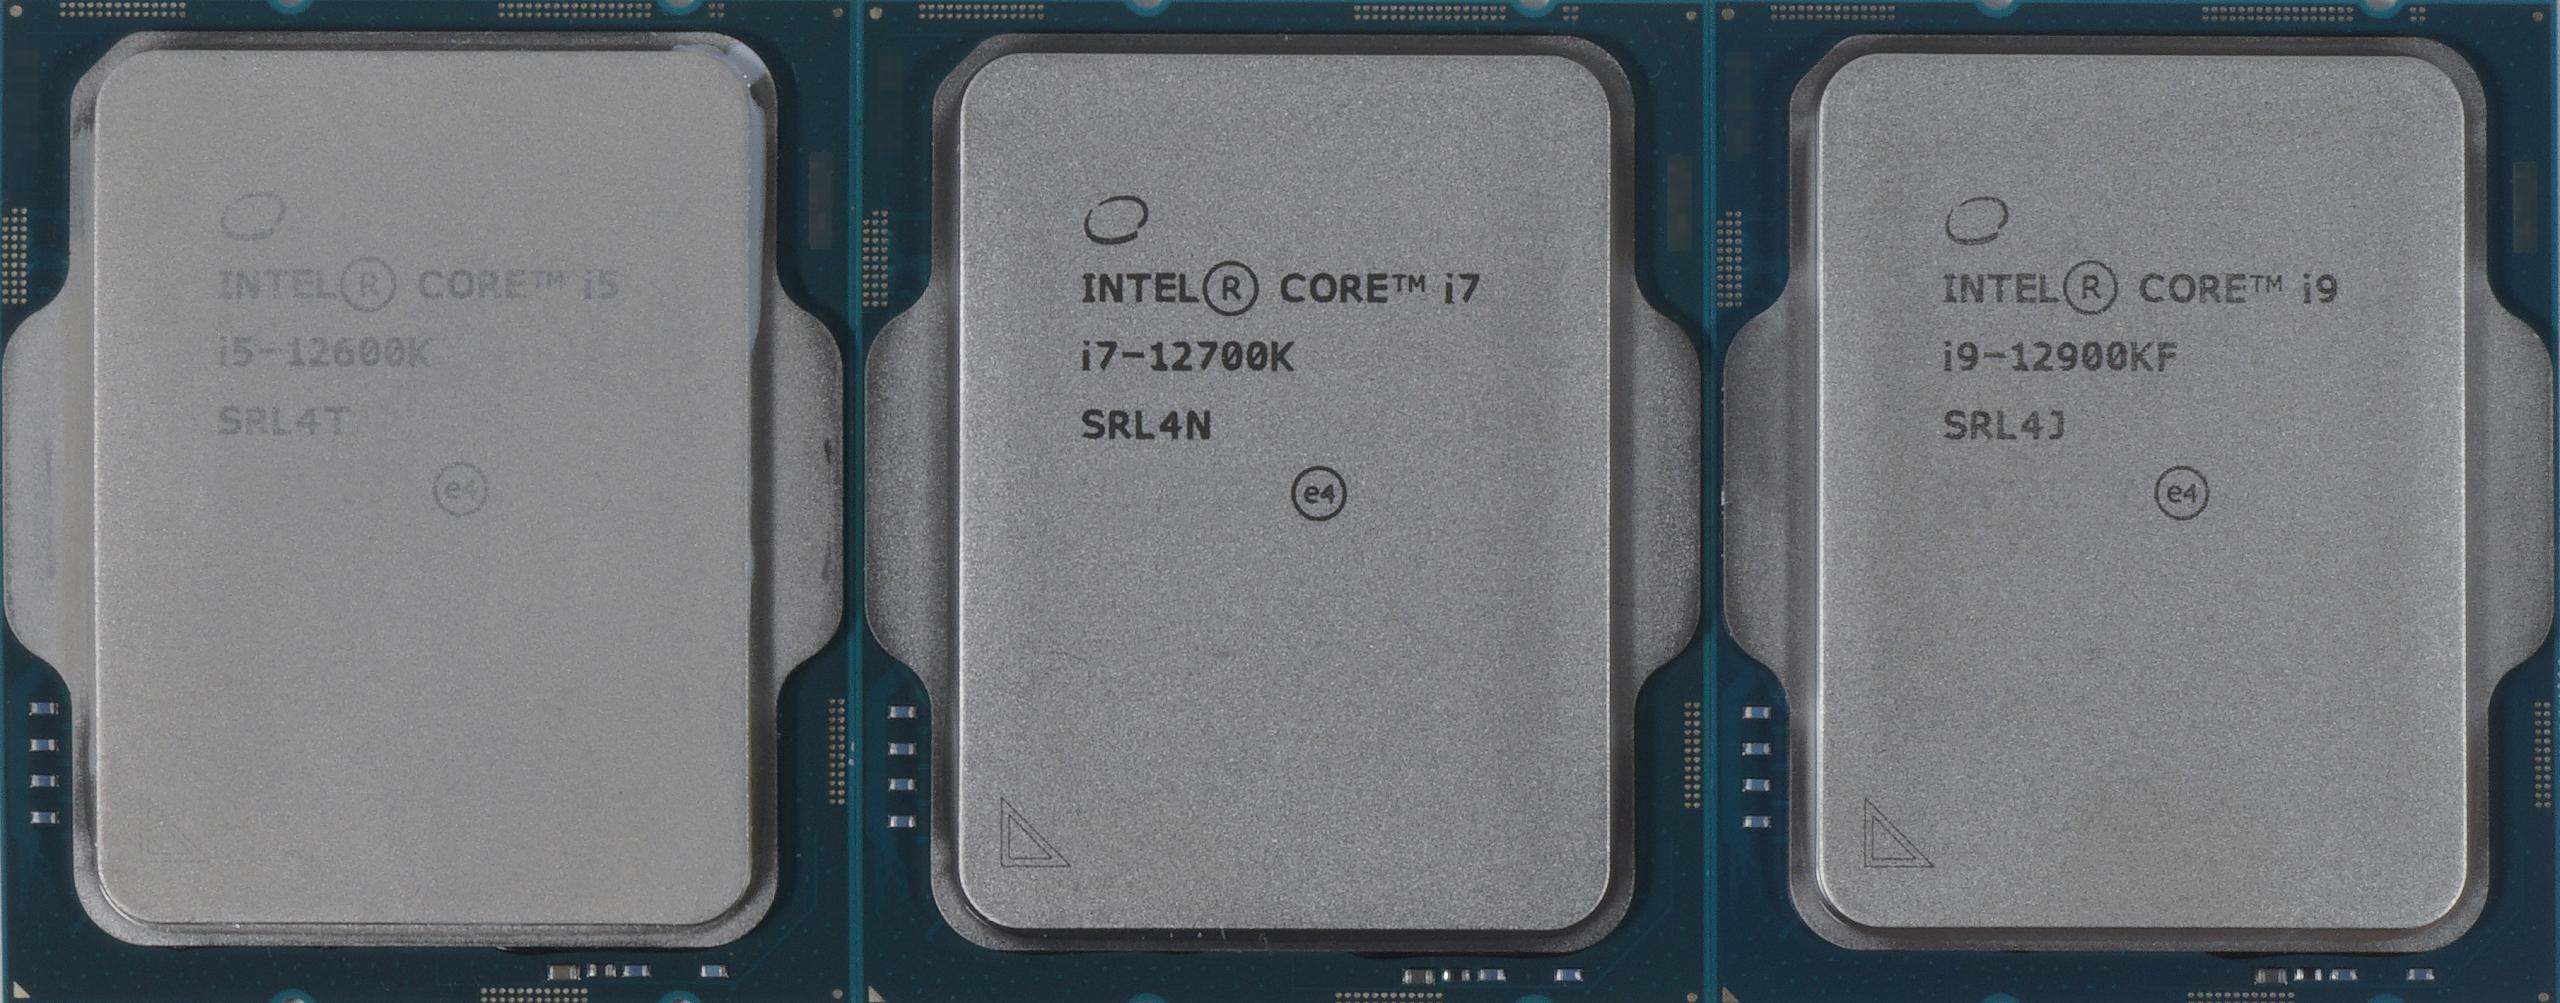 Процессор Intel Core i7 12700k. I7 12700k купить. Контактные площадки на процессоре i7 12700. I7 12700f в блистере. I7 12700 купить